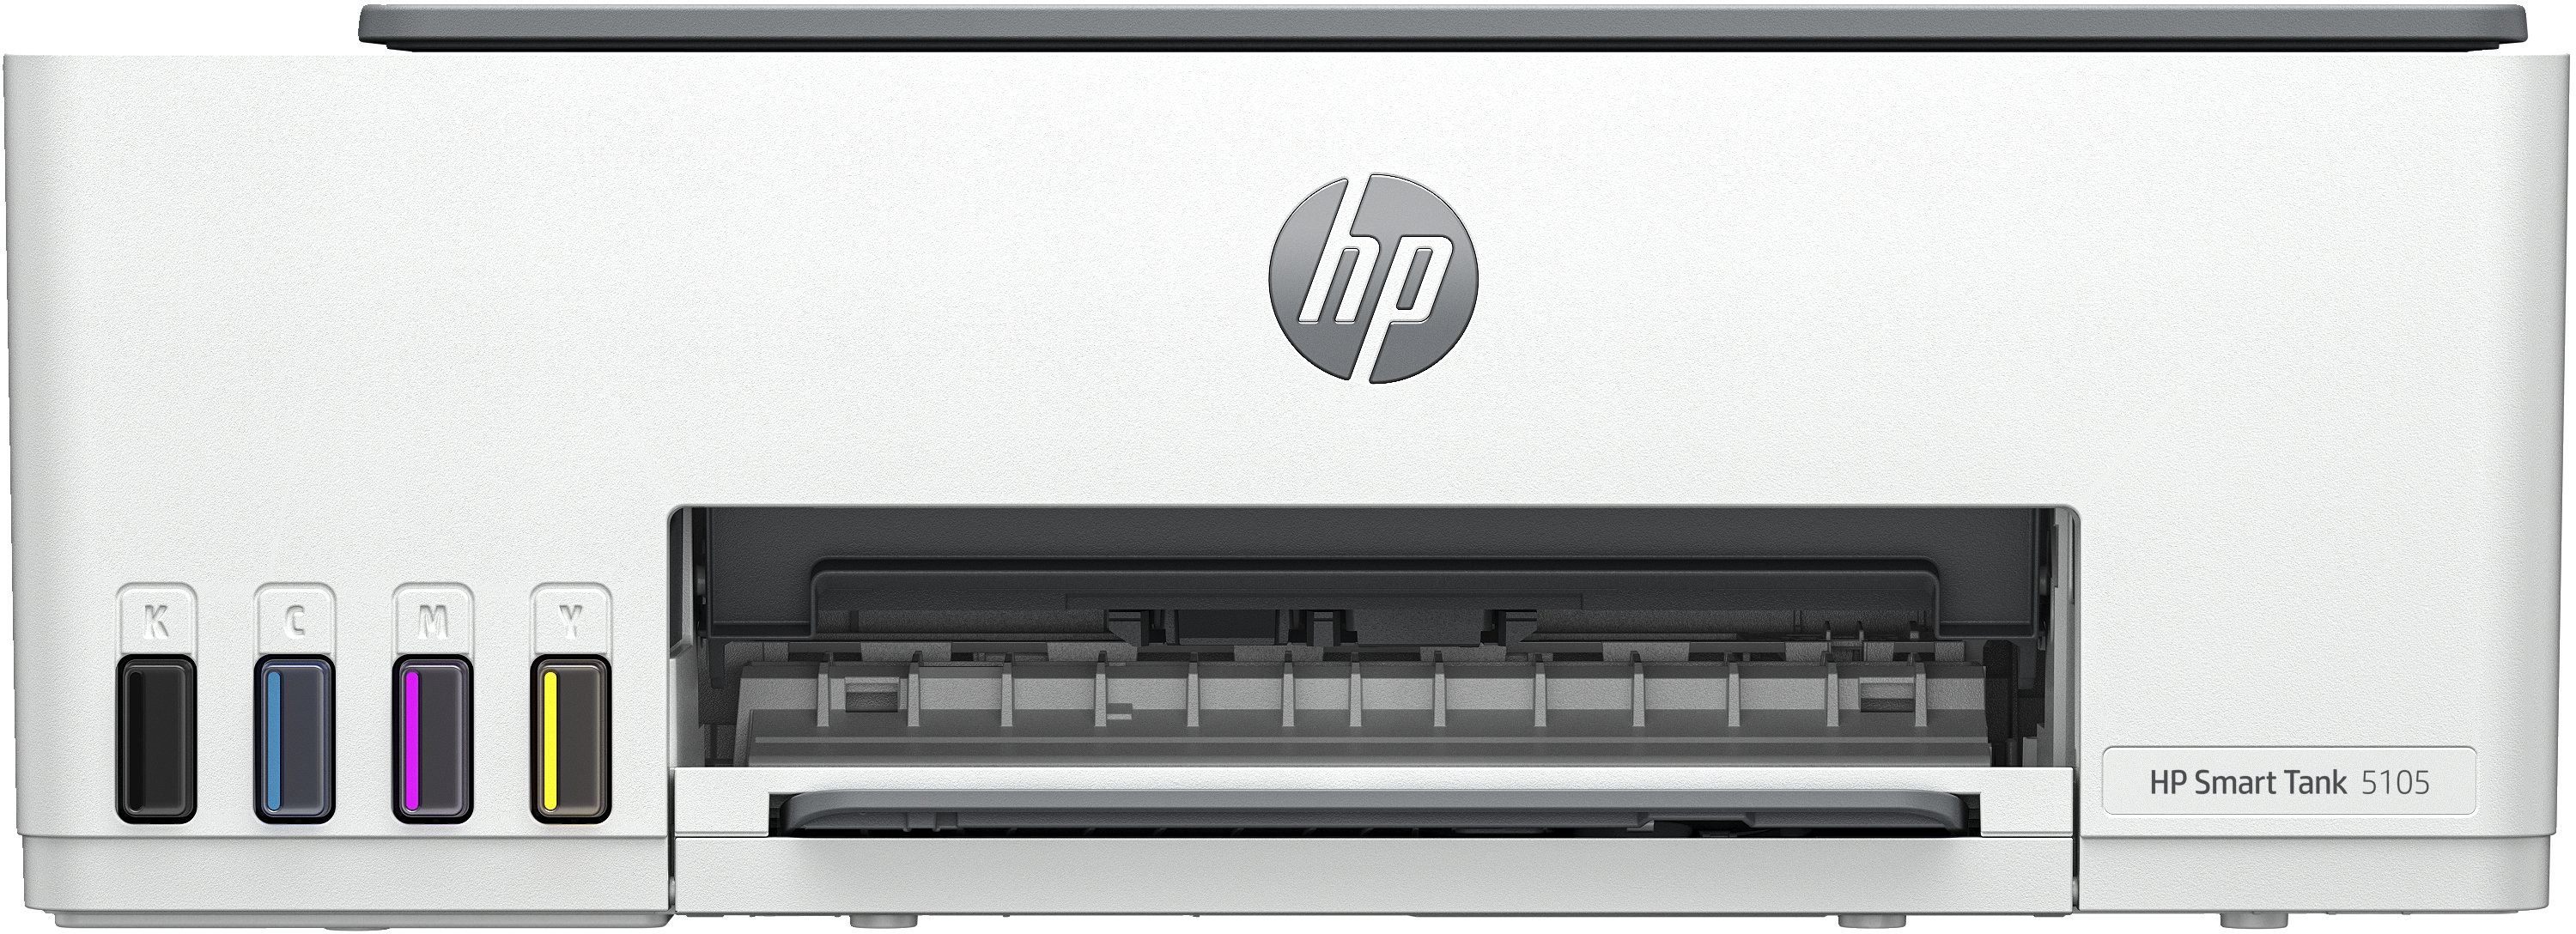 HP HP Smart Tank 5105 All-in-One-printer, Kleur, Printer voor Thuis en thuiskantoor, Printen, kopi&#235;ren, scannen, Draadloos; printertank voor grote volumes; printen vanaf telefoon of tablet; scannen naar pdf